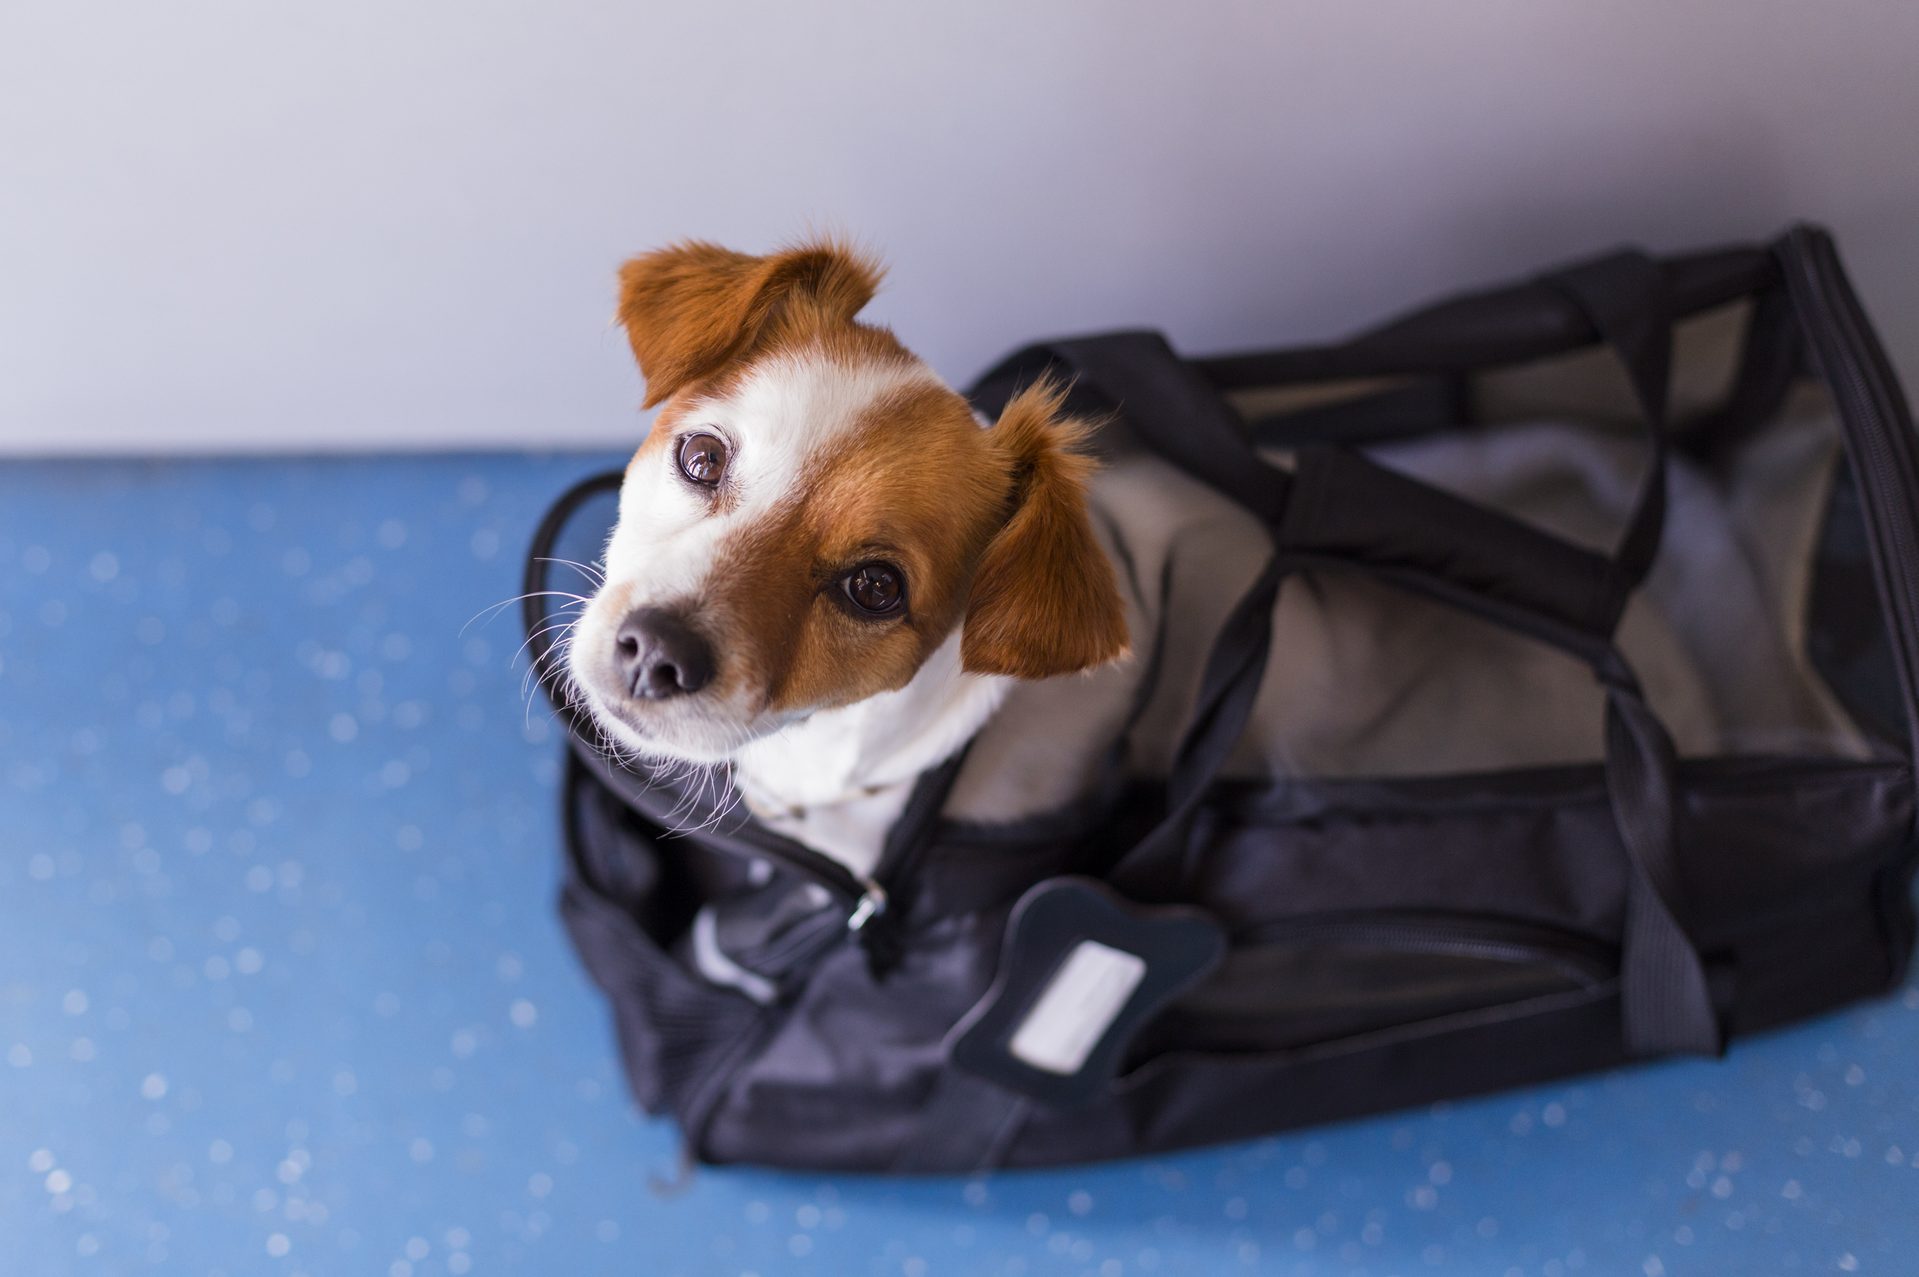  Slow Time Shop Large Transport Bag Fashion Dog Carrier